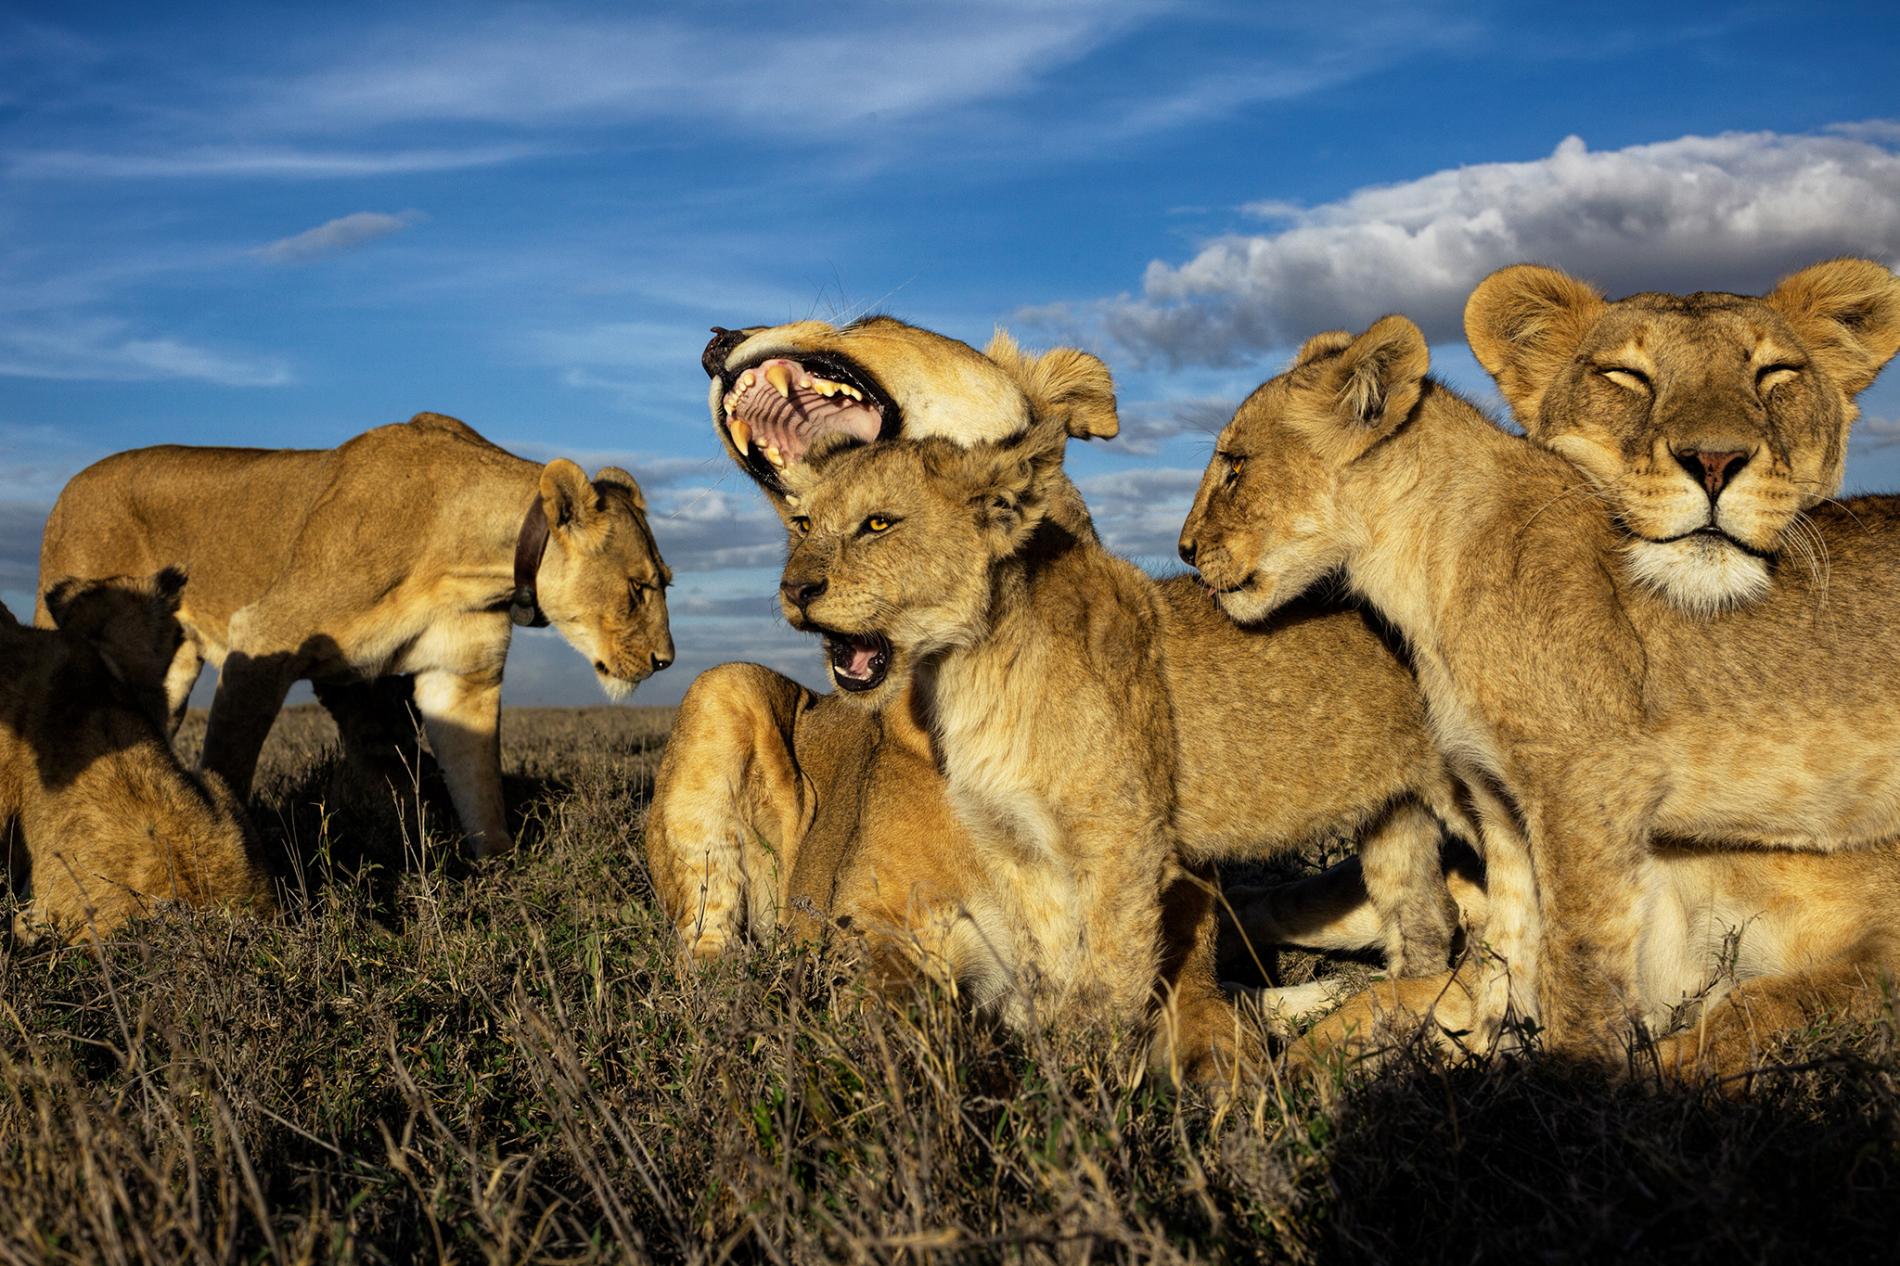 ライオン 群れの王はメス 映画と違う野生の掟 ナショナルジオグラフィック日本版サイト